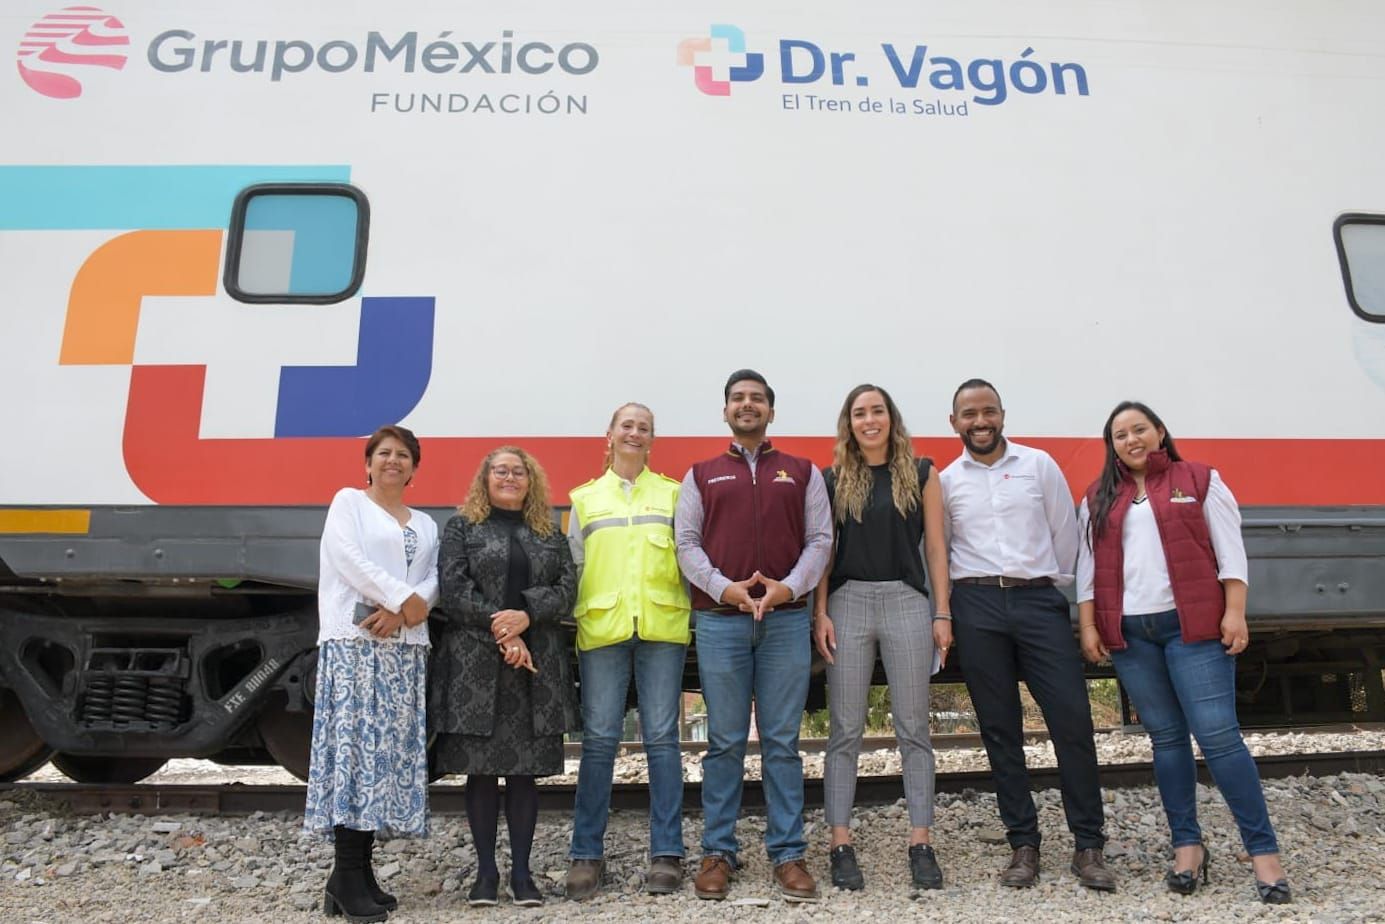 Otorgan en Neza Servicios Médicos y Funciones de Cine Gratuitos por Medio del Tren de la Salud "Dr. Vagón" de Casi Medio Kilómetro de Extensión
